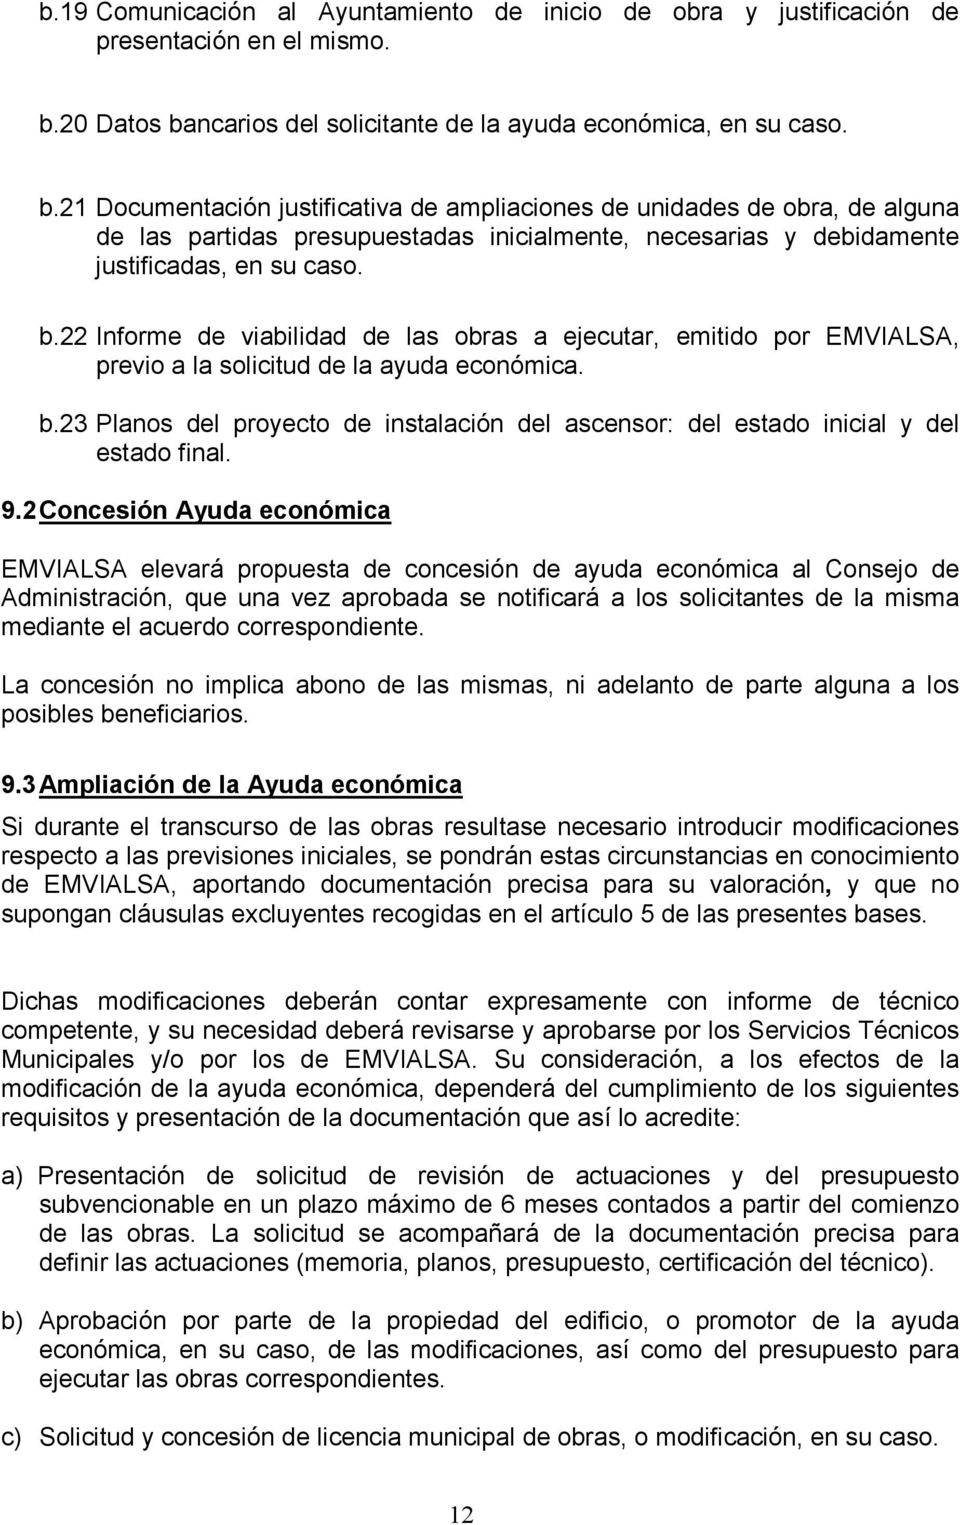 b.22 Informe de viabilidad de las obras a ejecutar, emitido por EMVIALSA, previo a la solicitud de la ayuda económica. b.